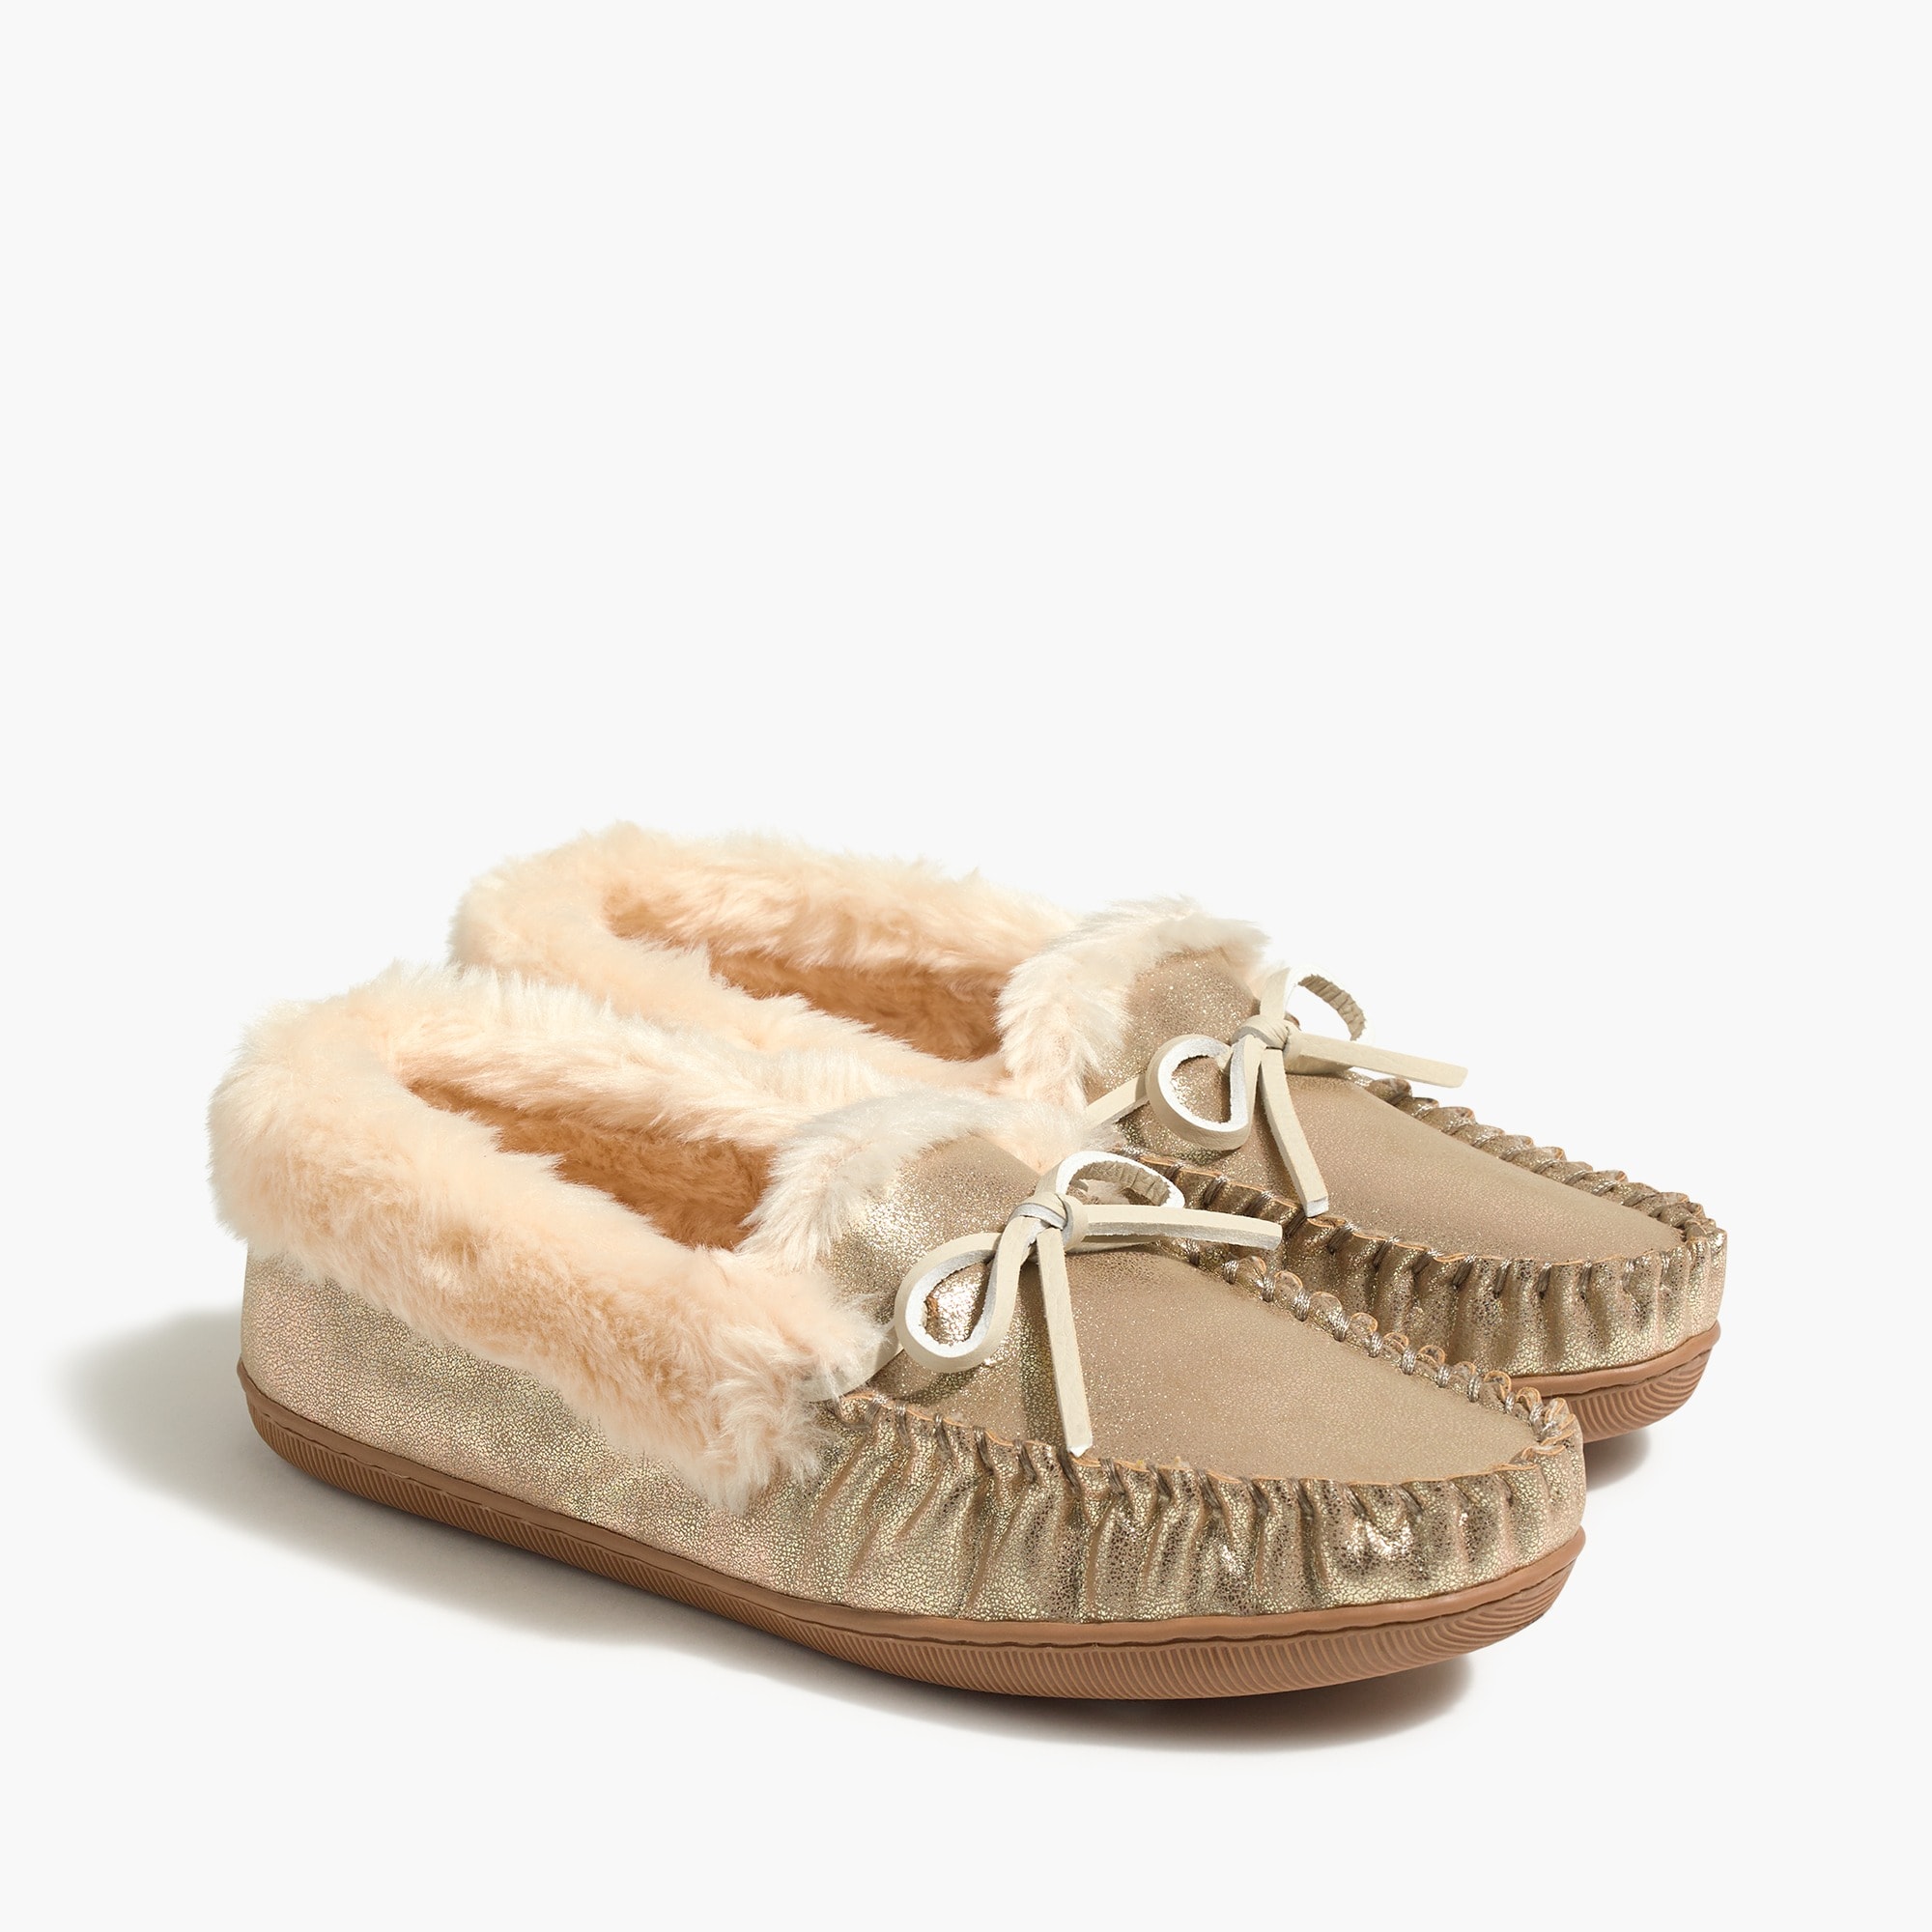 topshop tan sandals